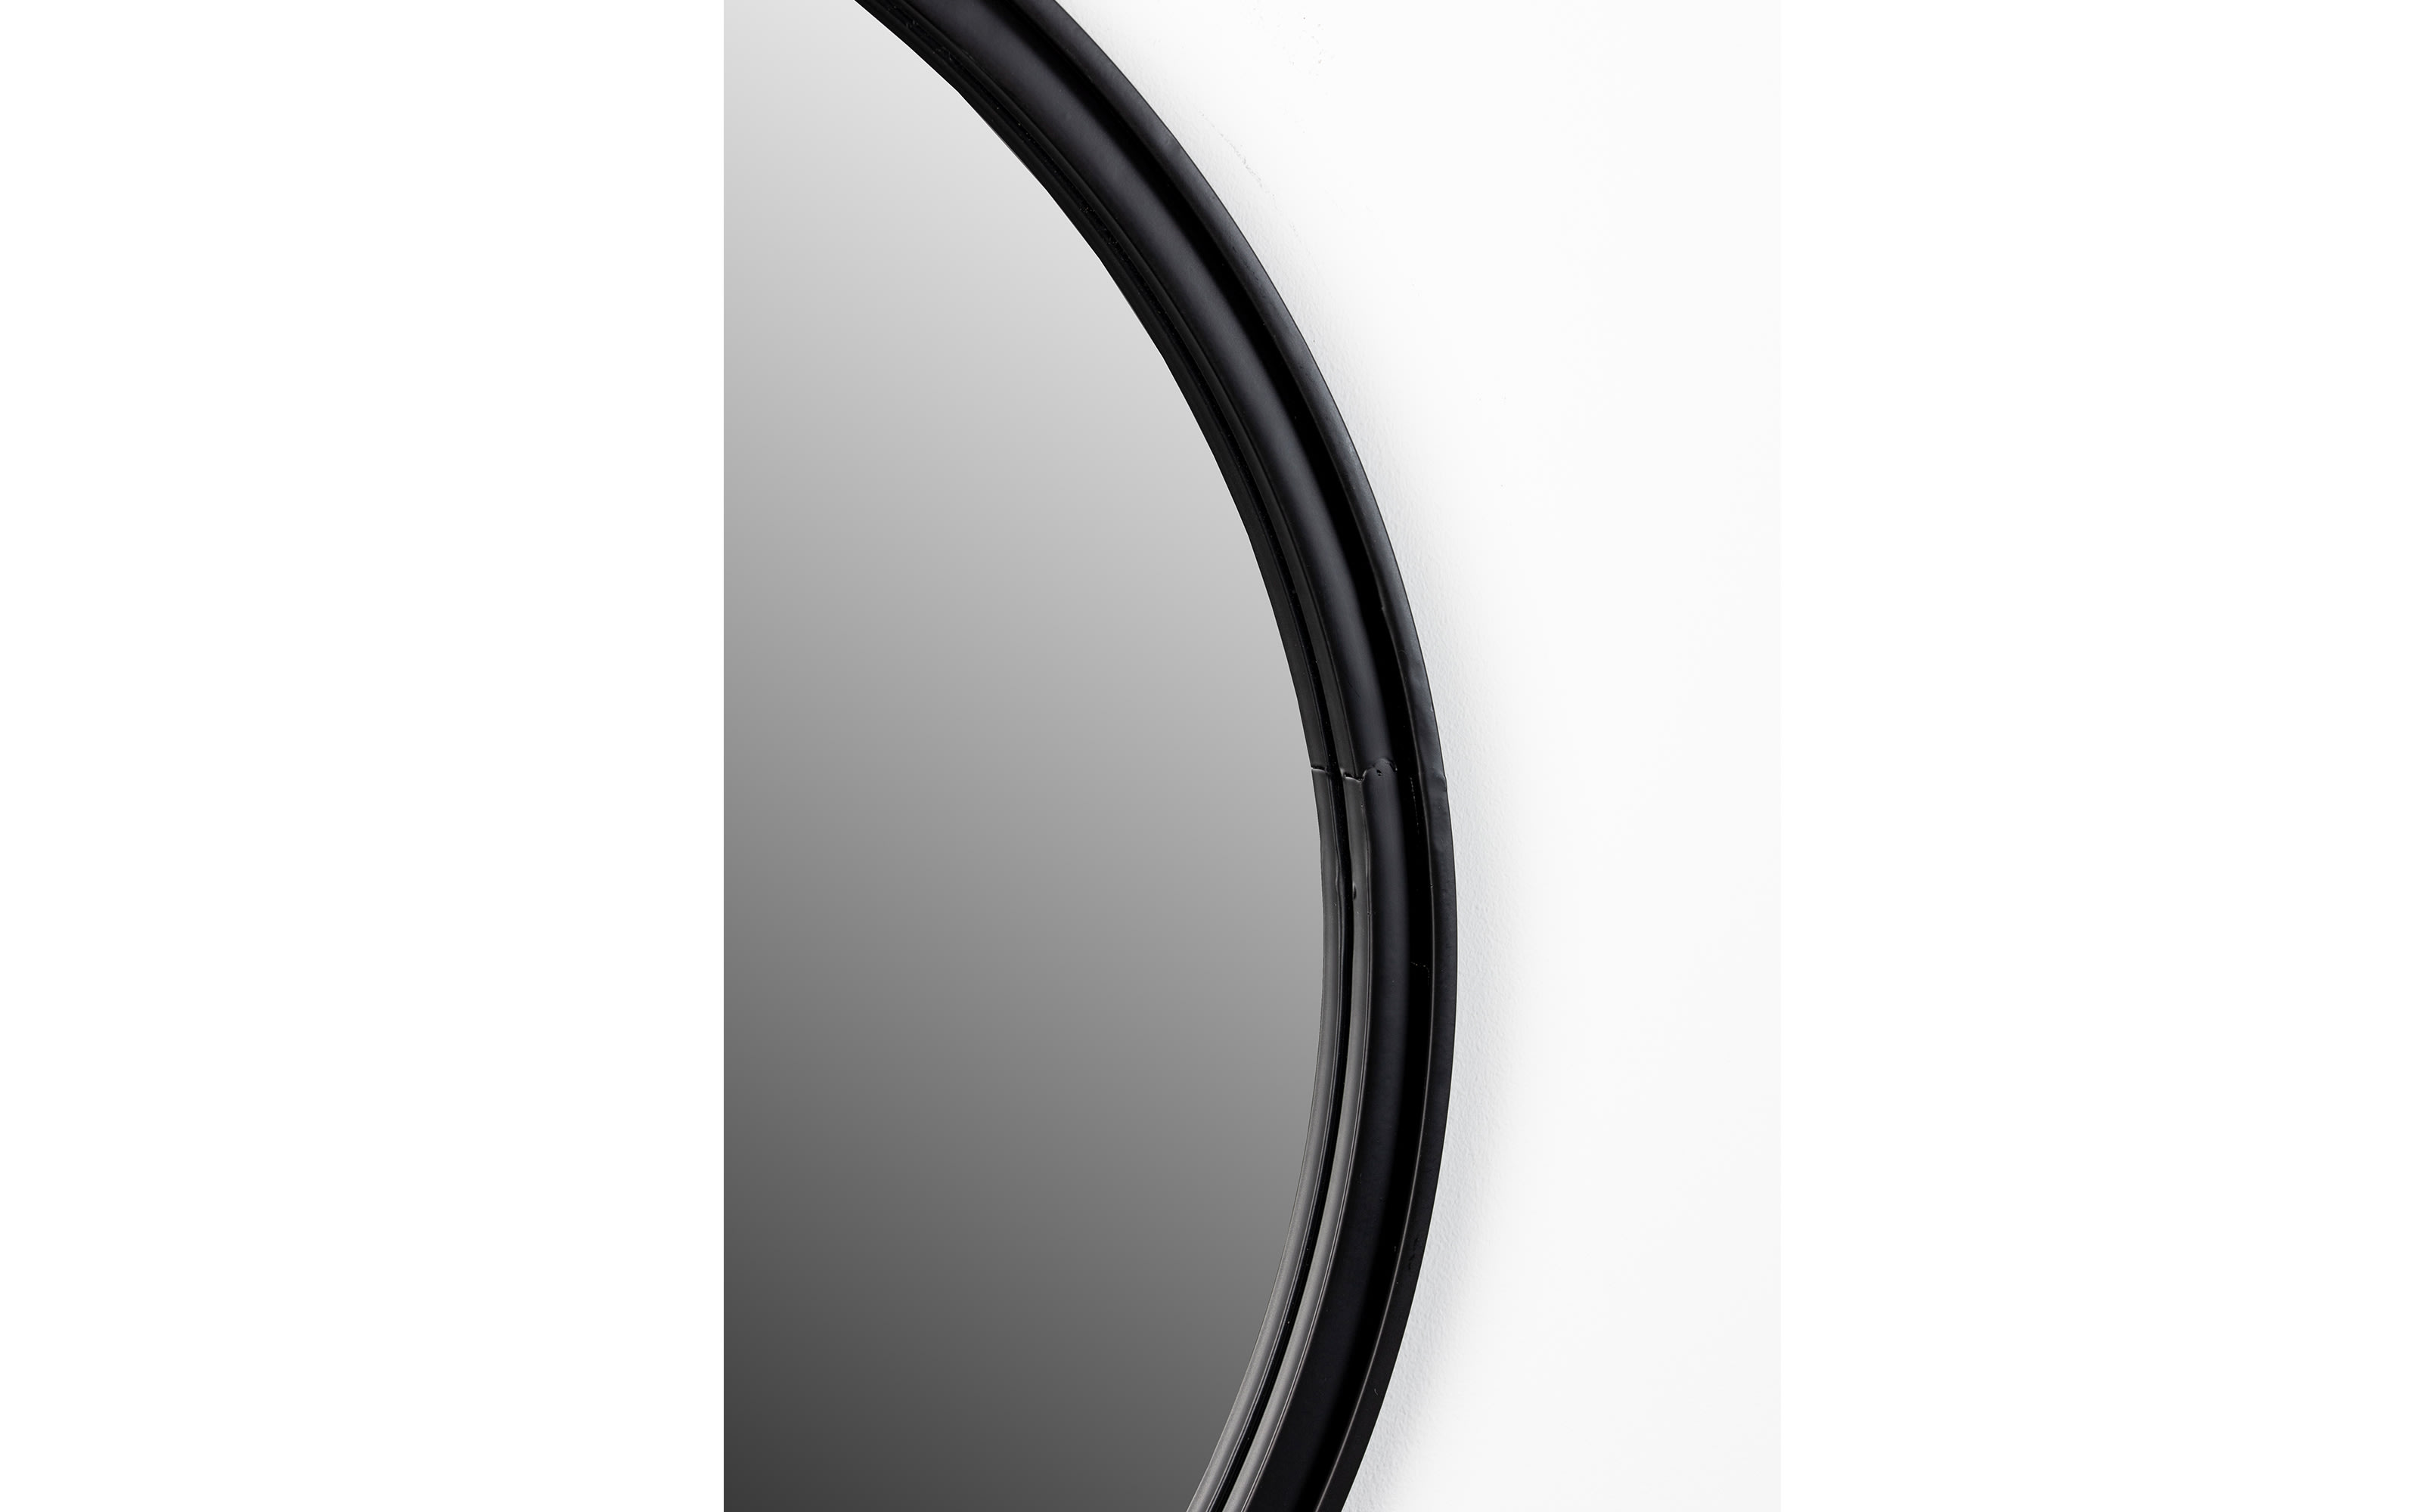 Spiegel Matz Round, schwarz, 60 cm 